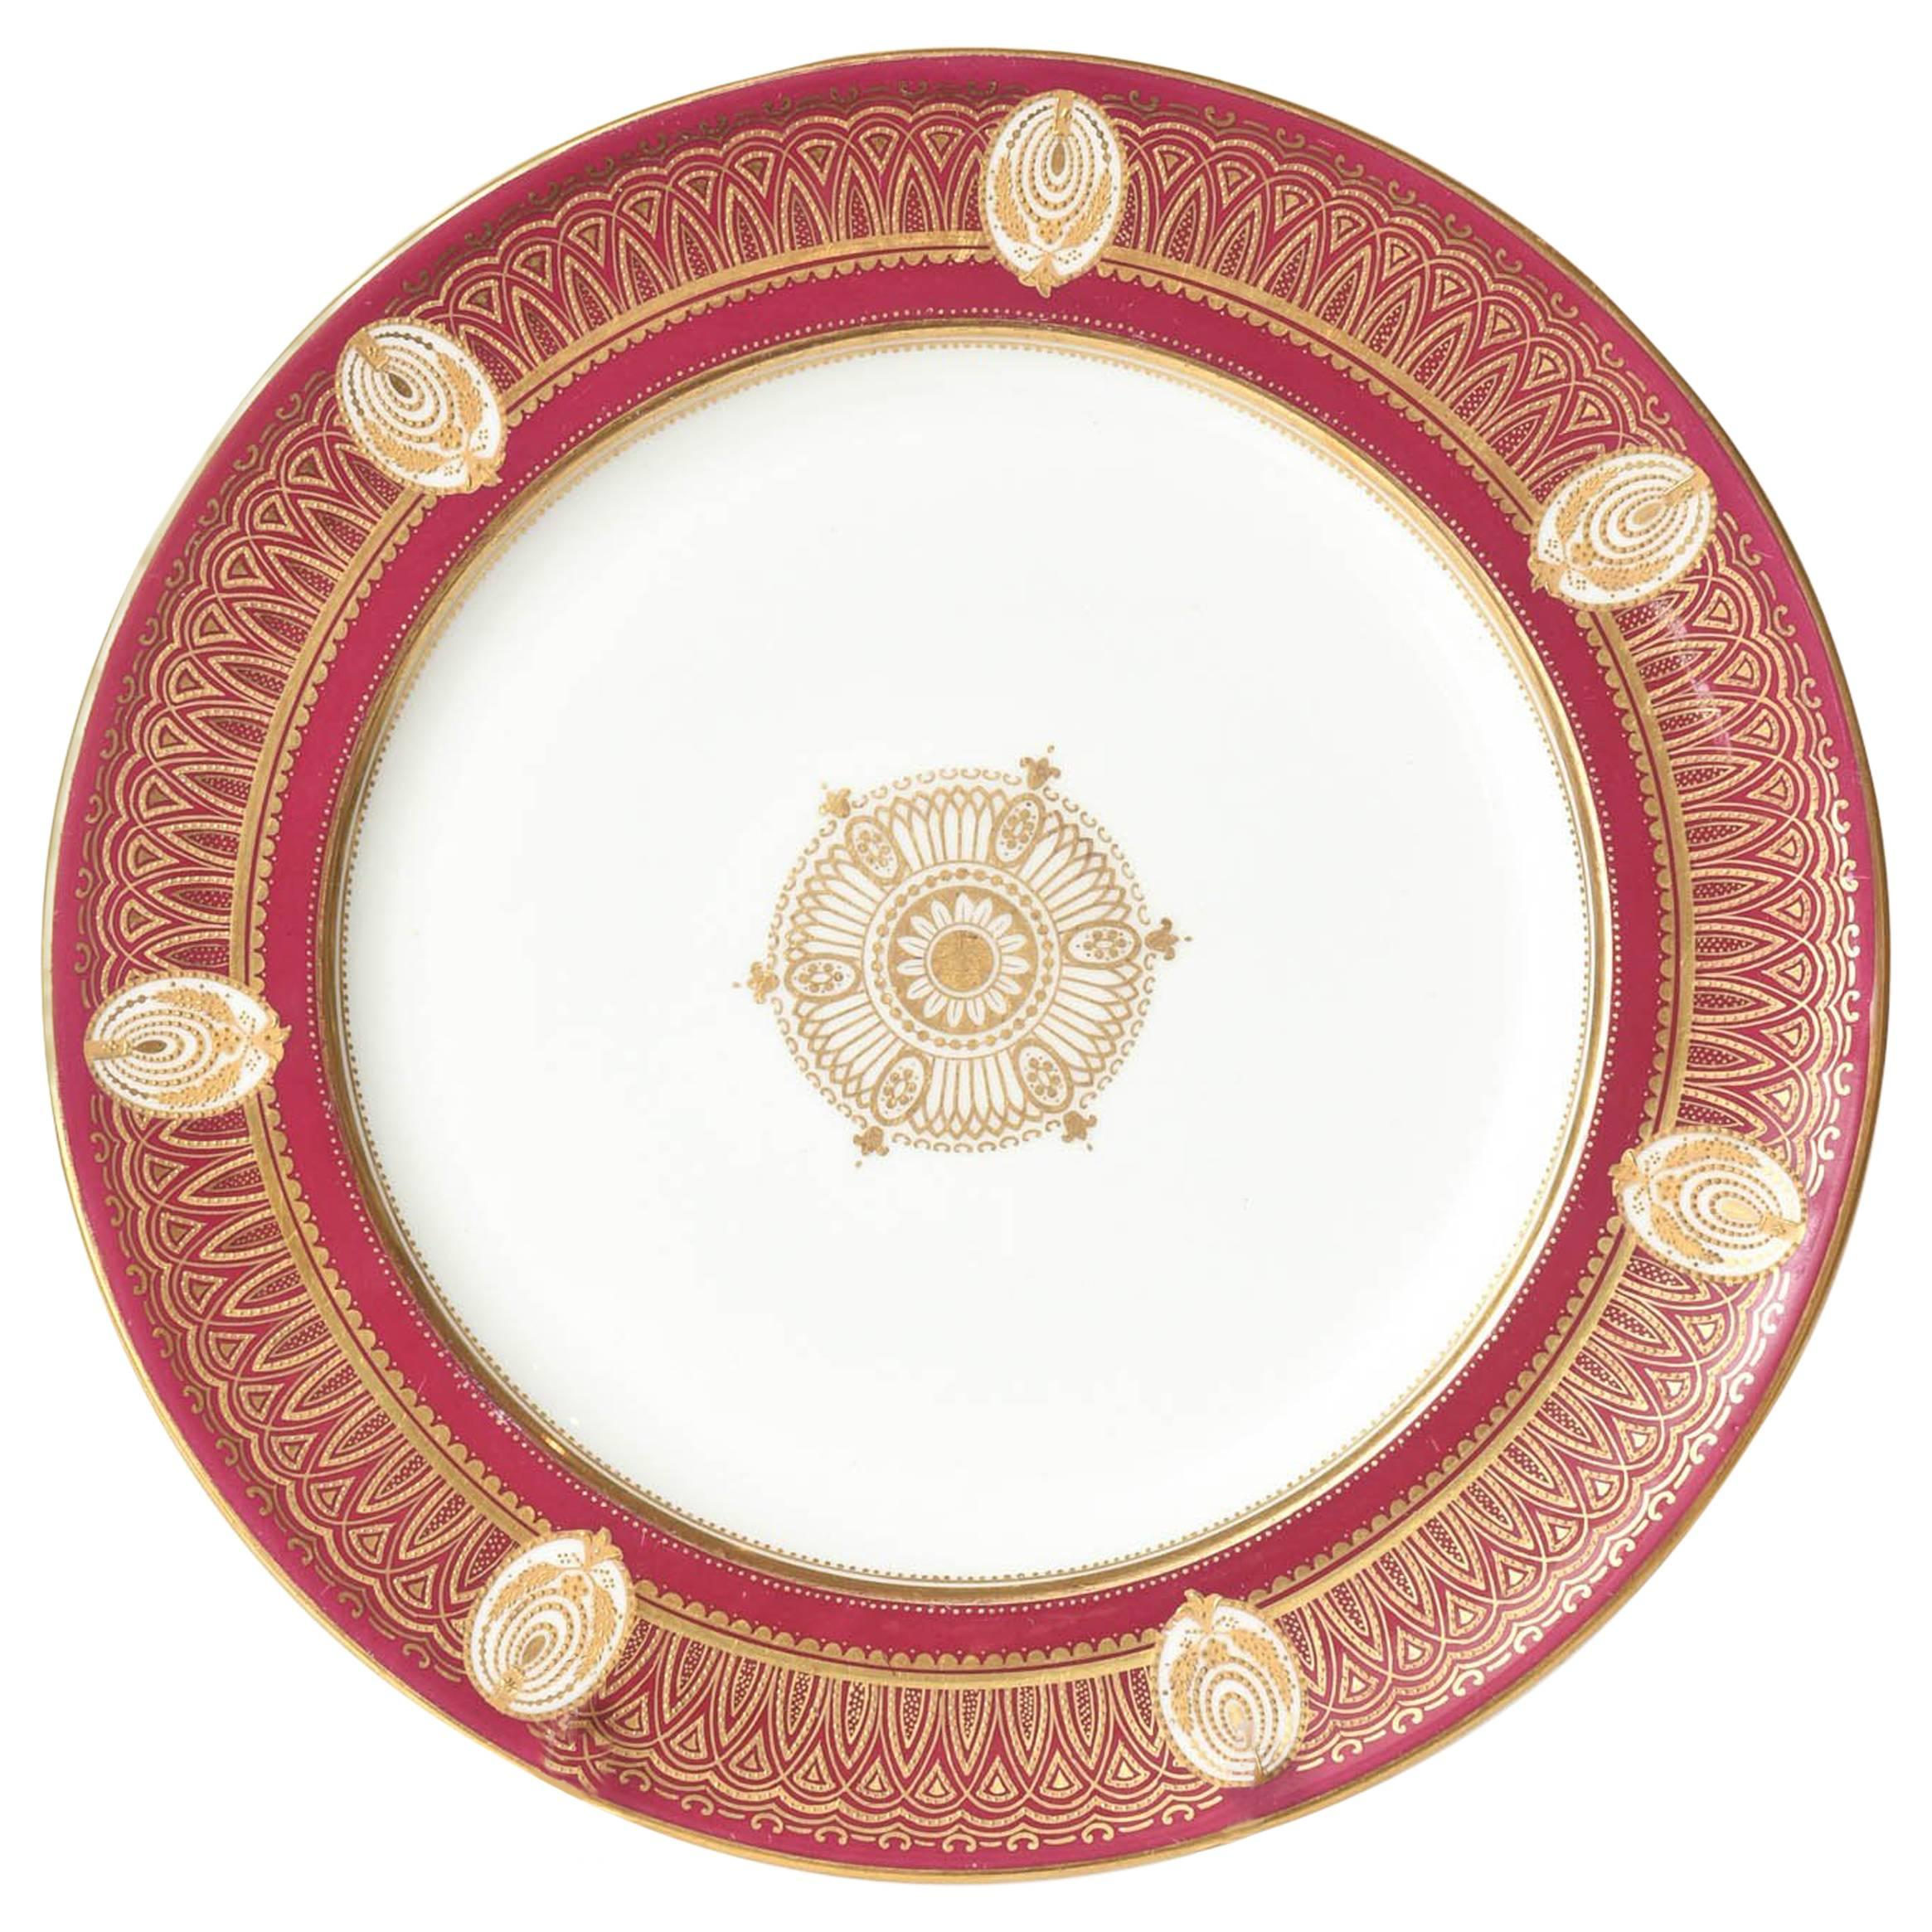 Stunning Ruby Red & Gilt Dinner Plates, Gold Medallion Centers, Raised Detail.11